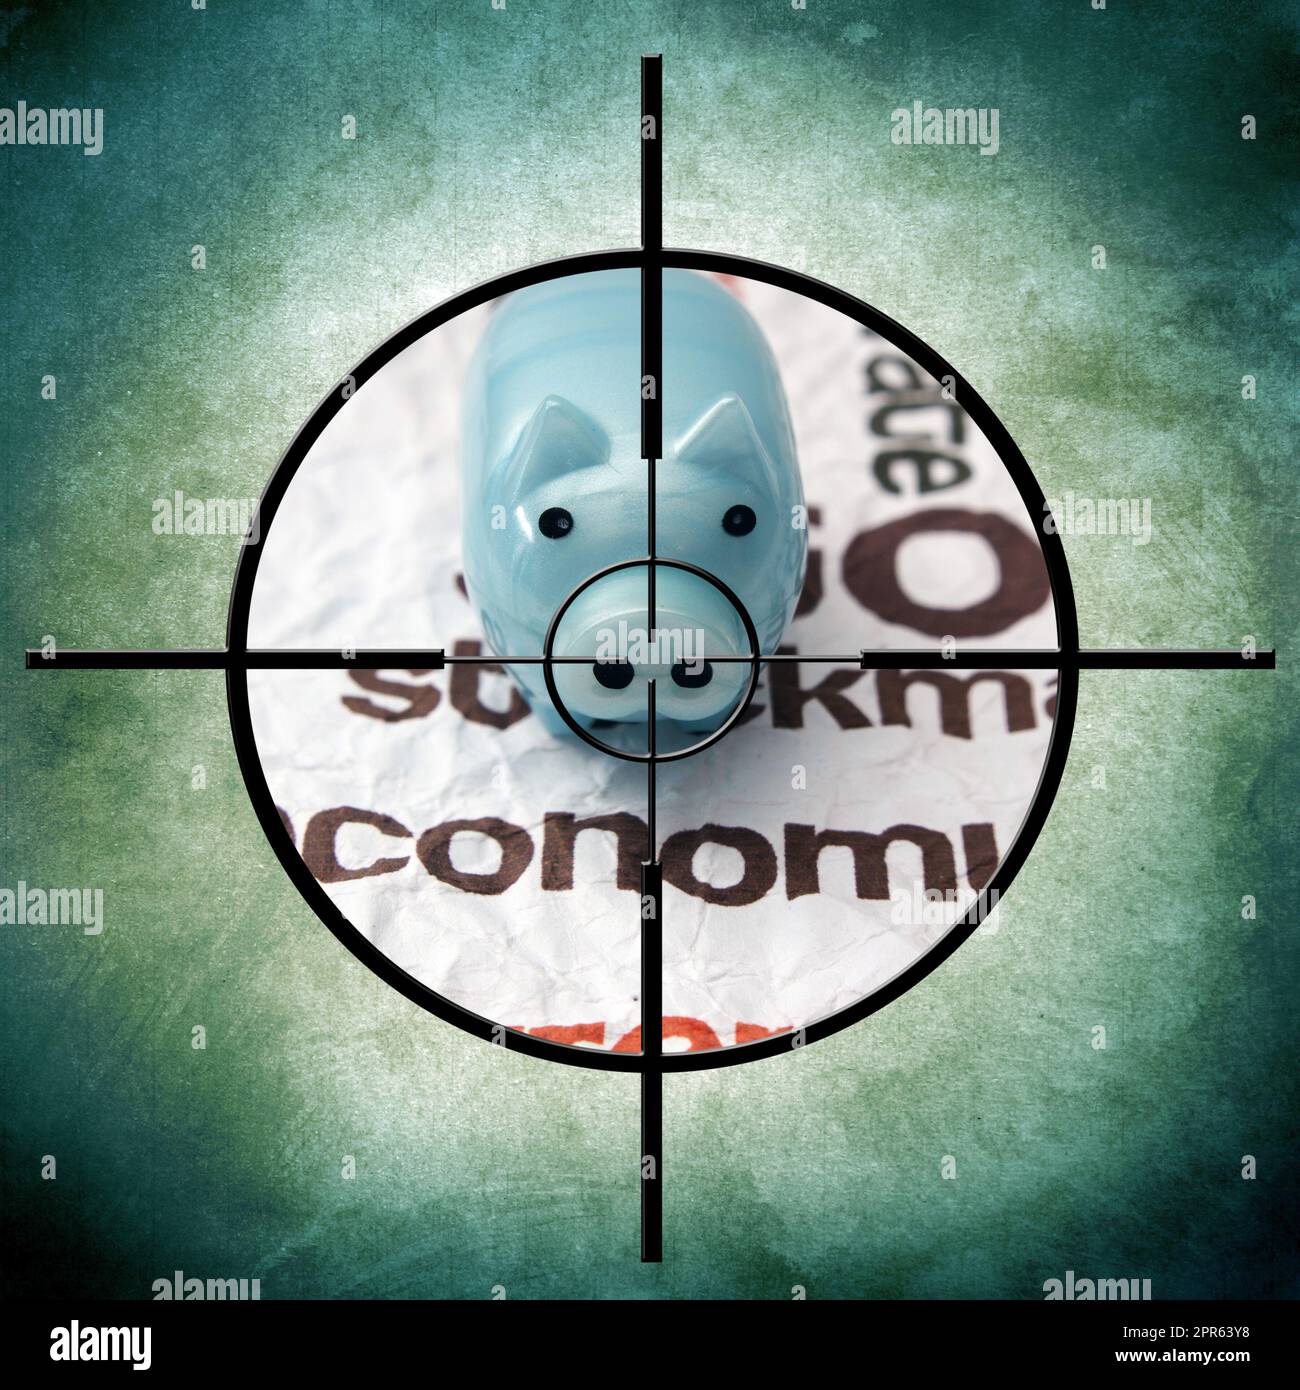 Piggy bank target Stock Photo